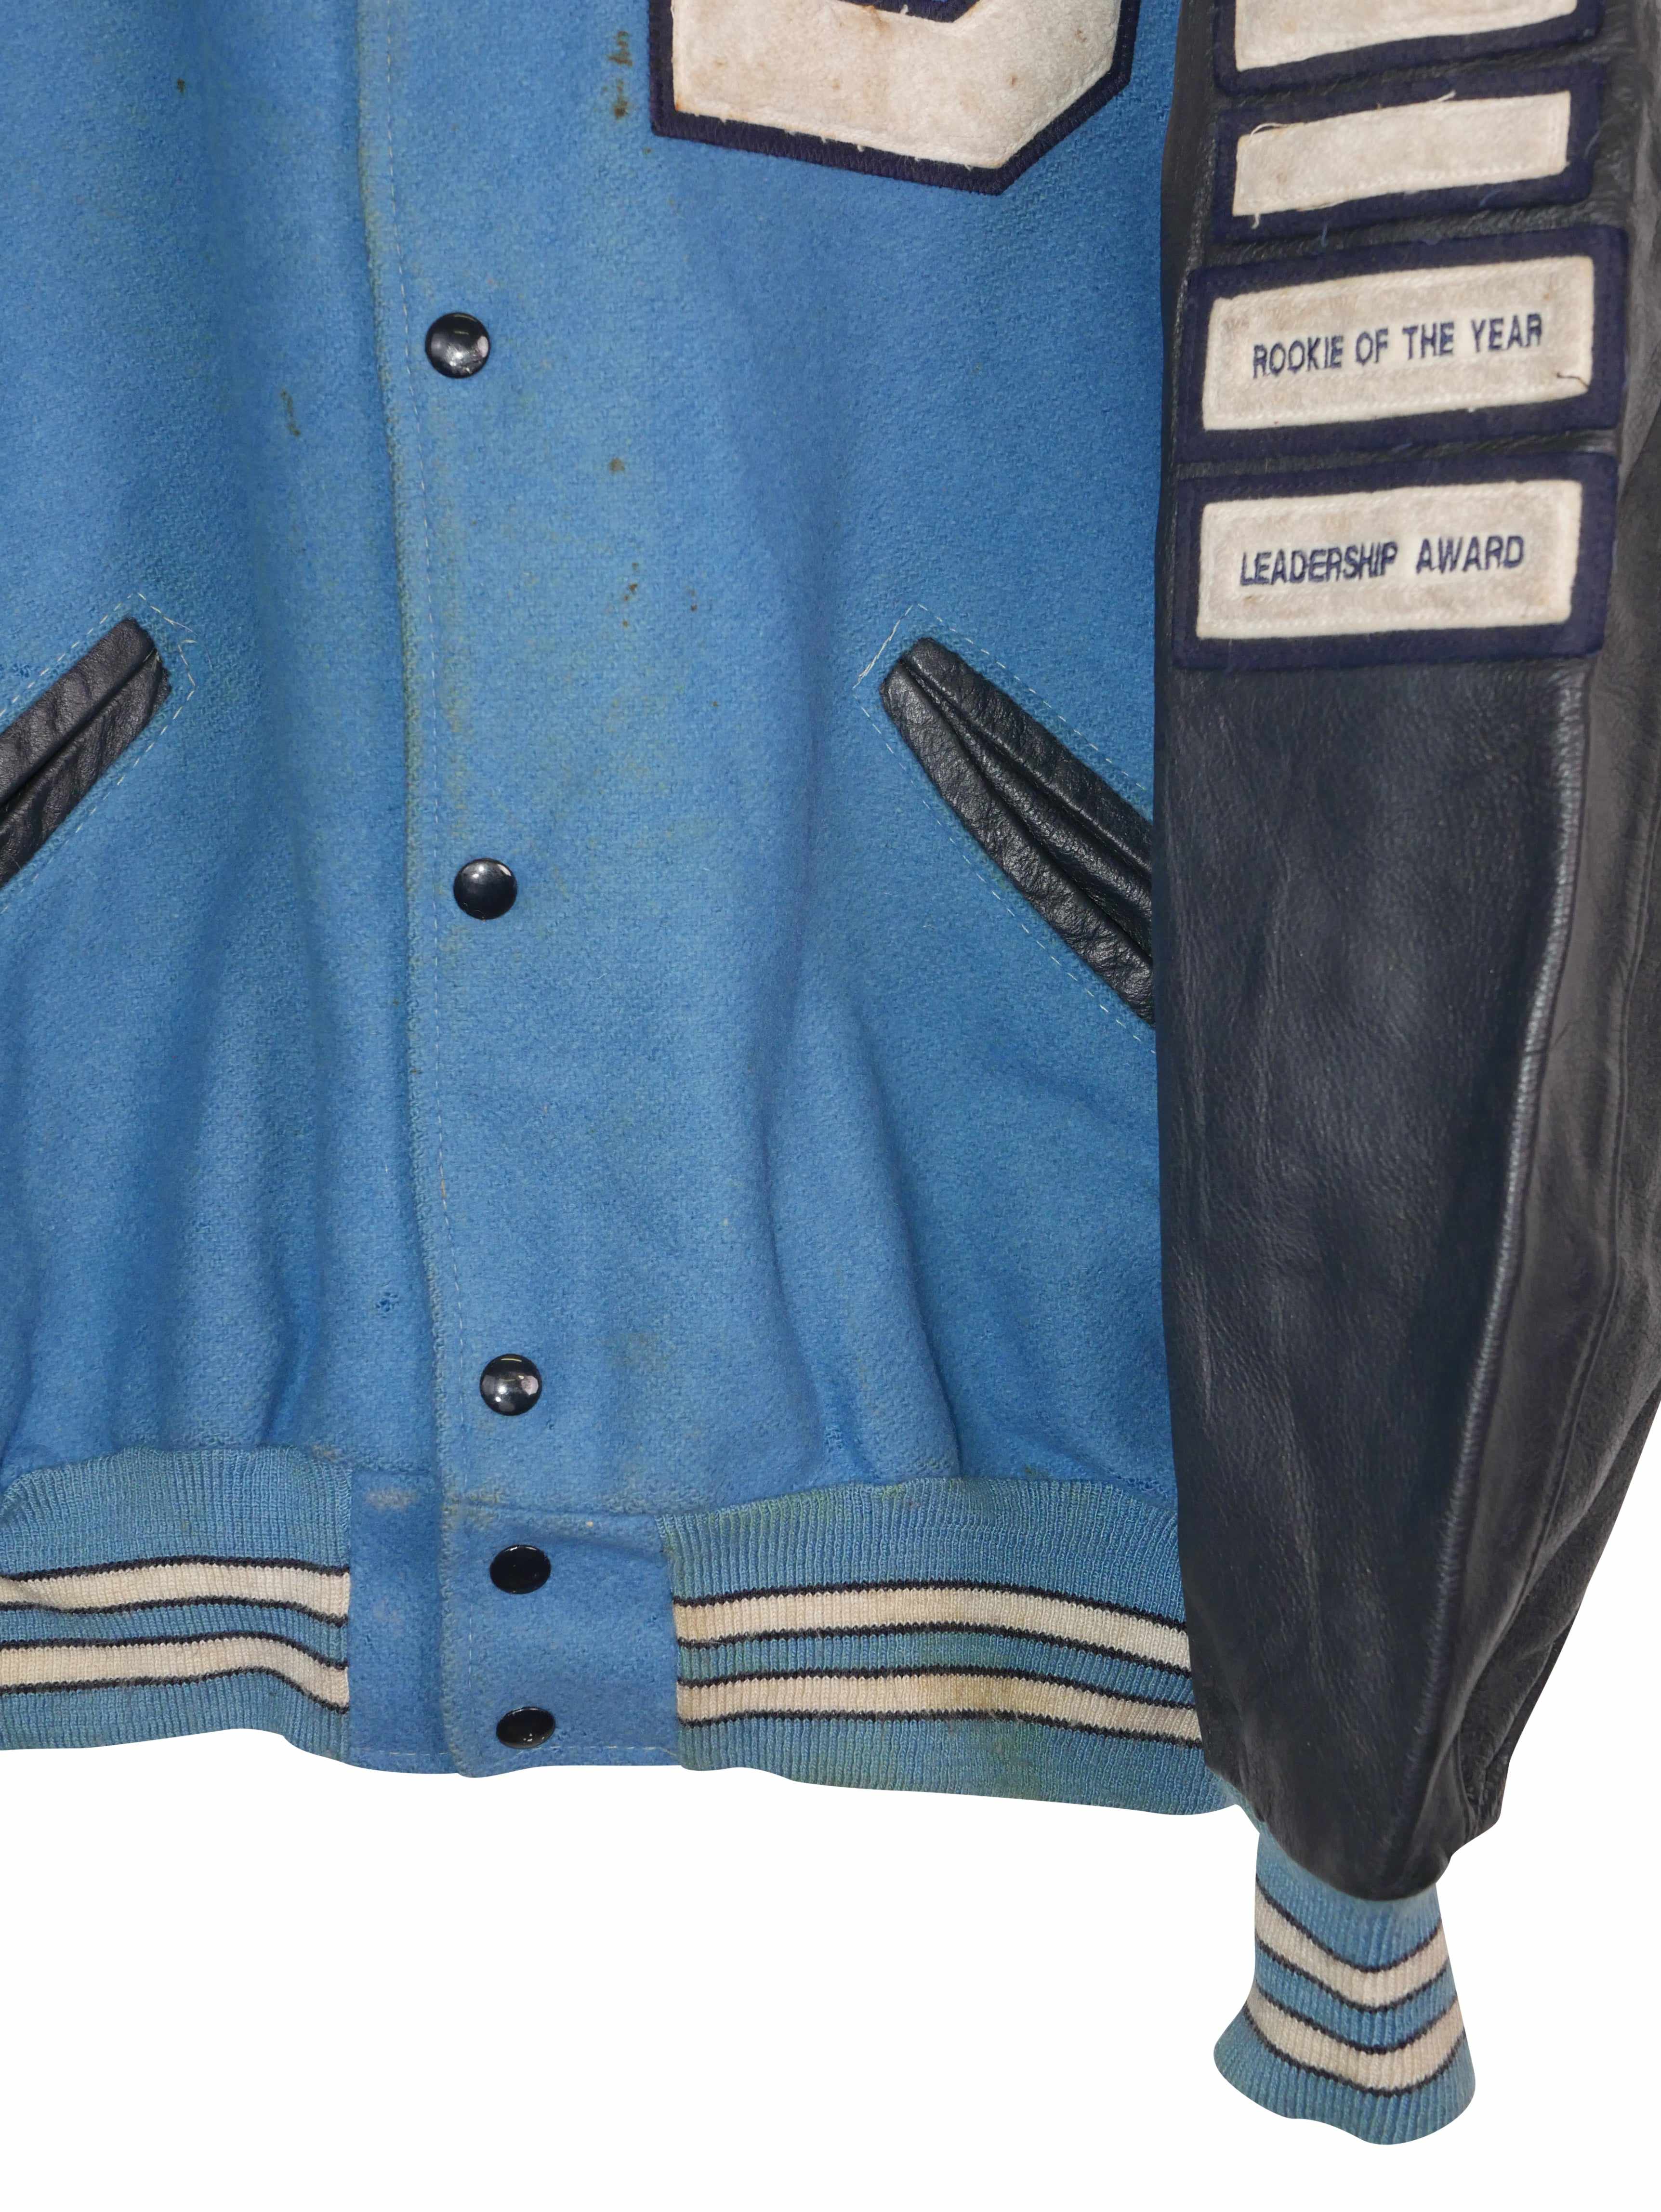 Vintage 90s Matt Bengals Leather Varsity Jacket (XL)-JACKET-MISCELLANEOUS-SIZE XL-Room On Fire